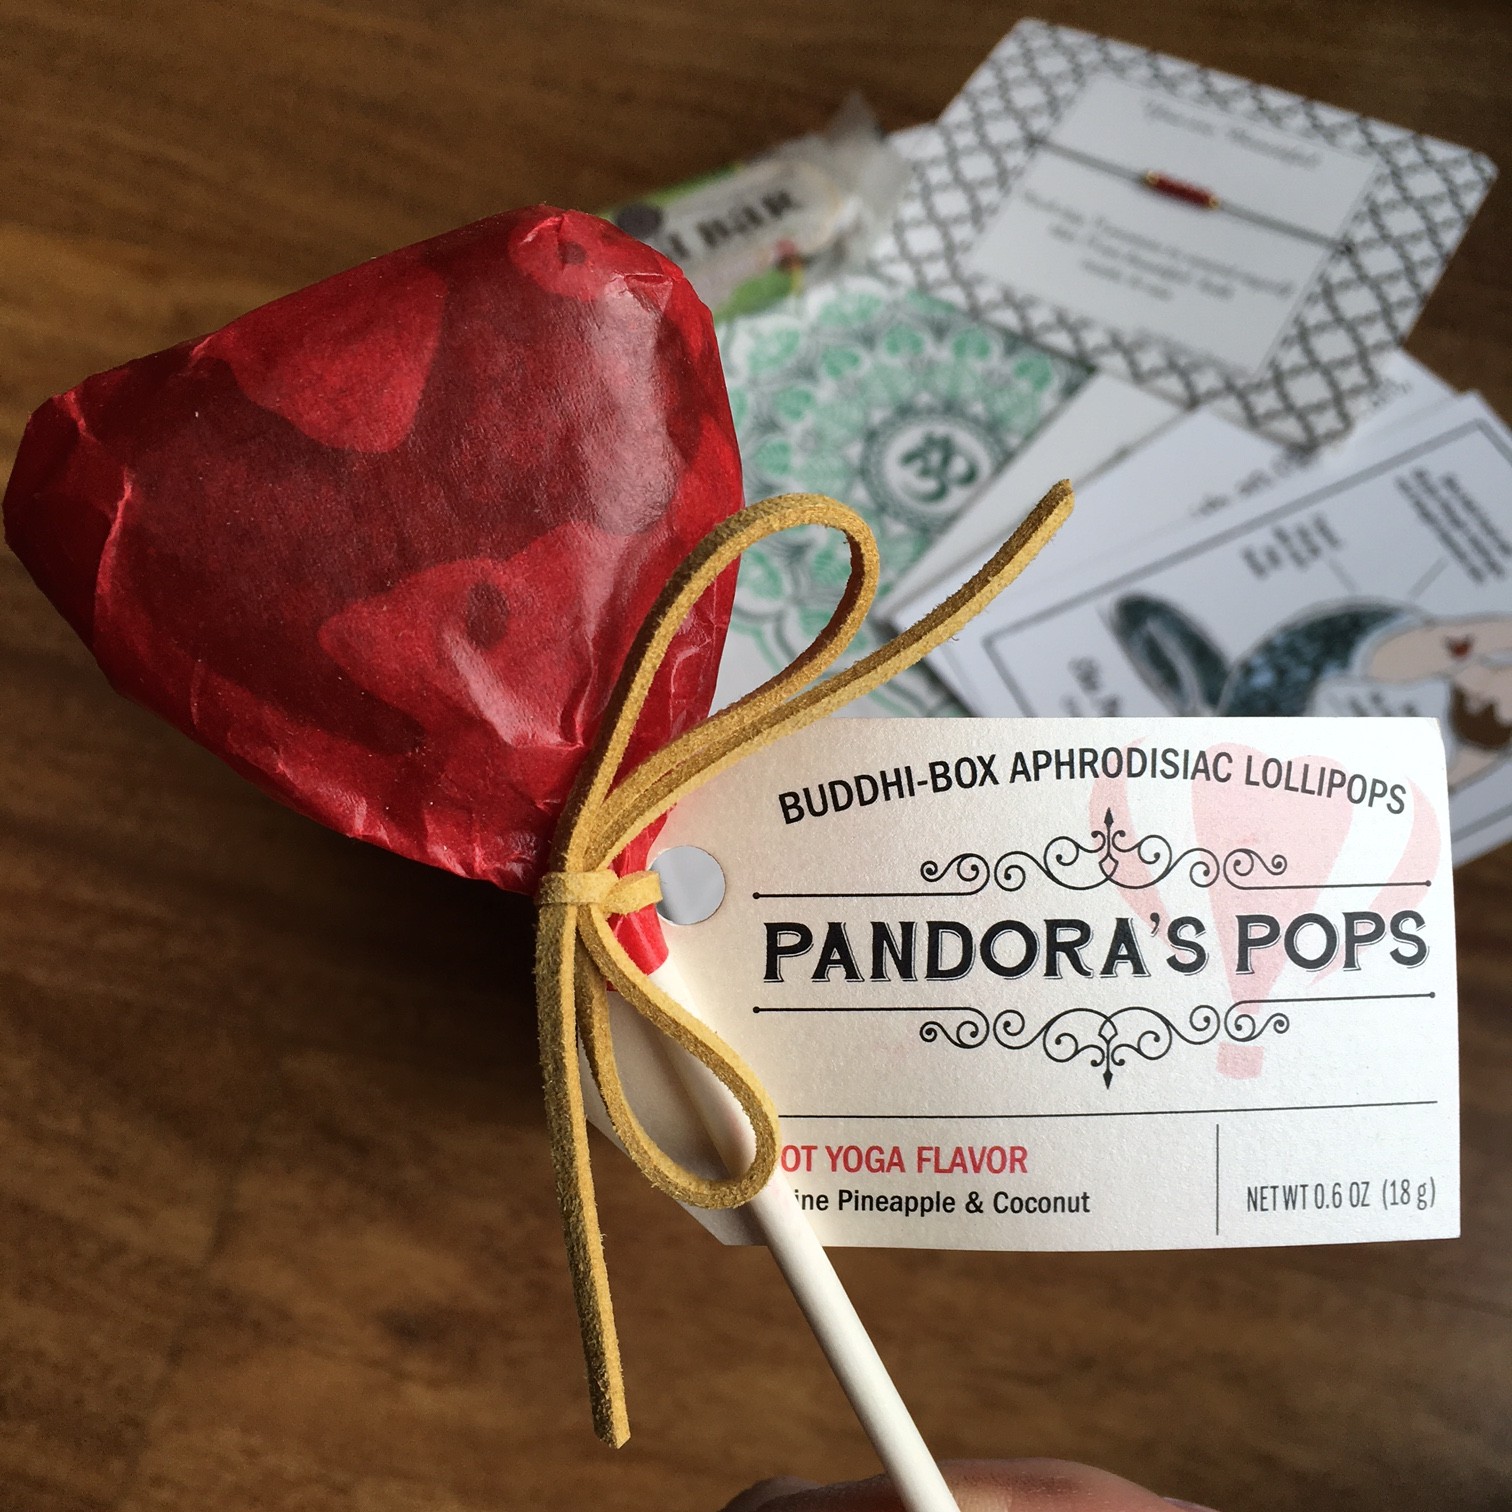 Pandoras Pops